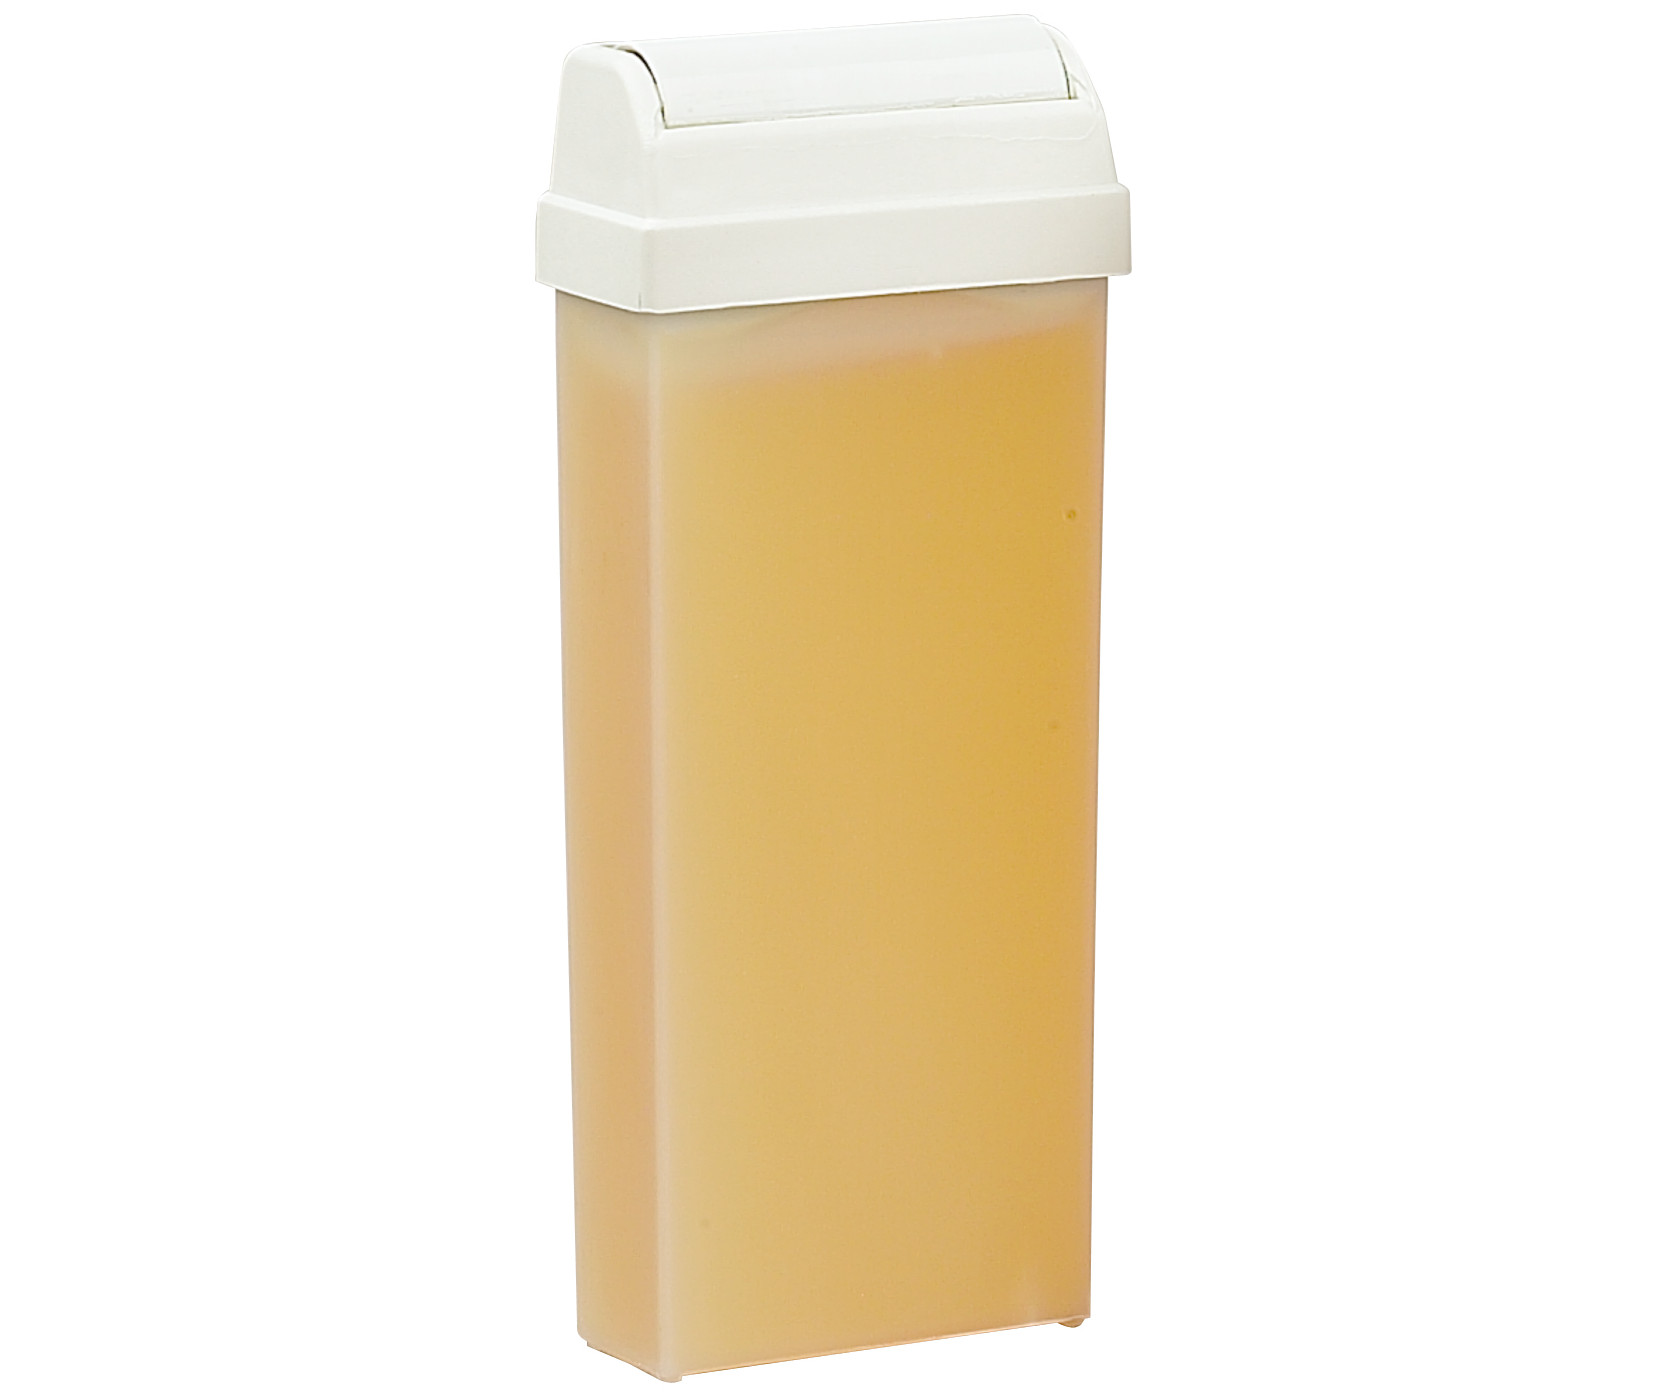 Depilační přírodní vosk pro všechny typy pokožky Sibel - žlutý, 110 ml (7410122)